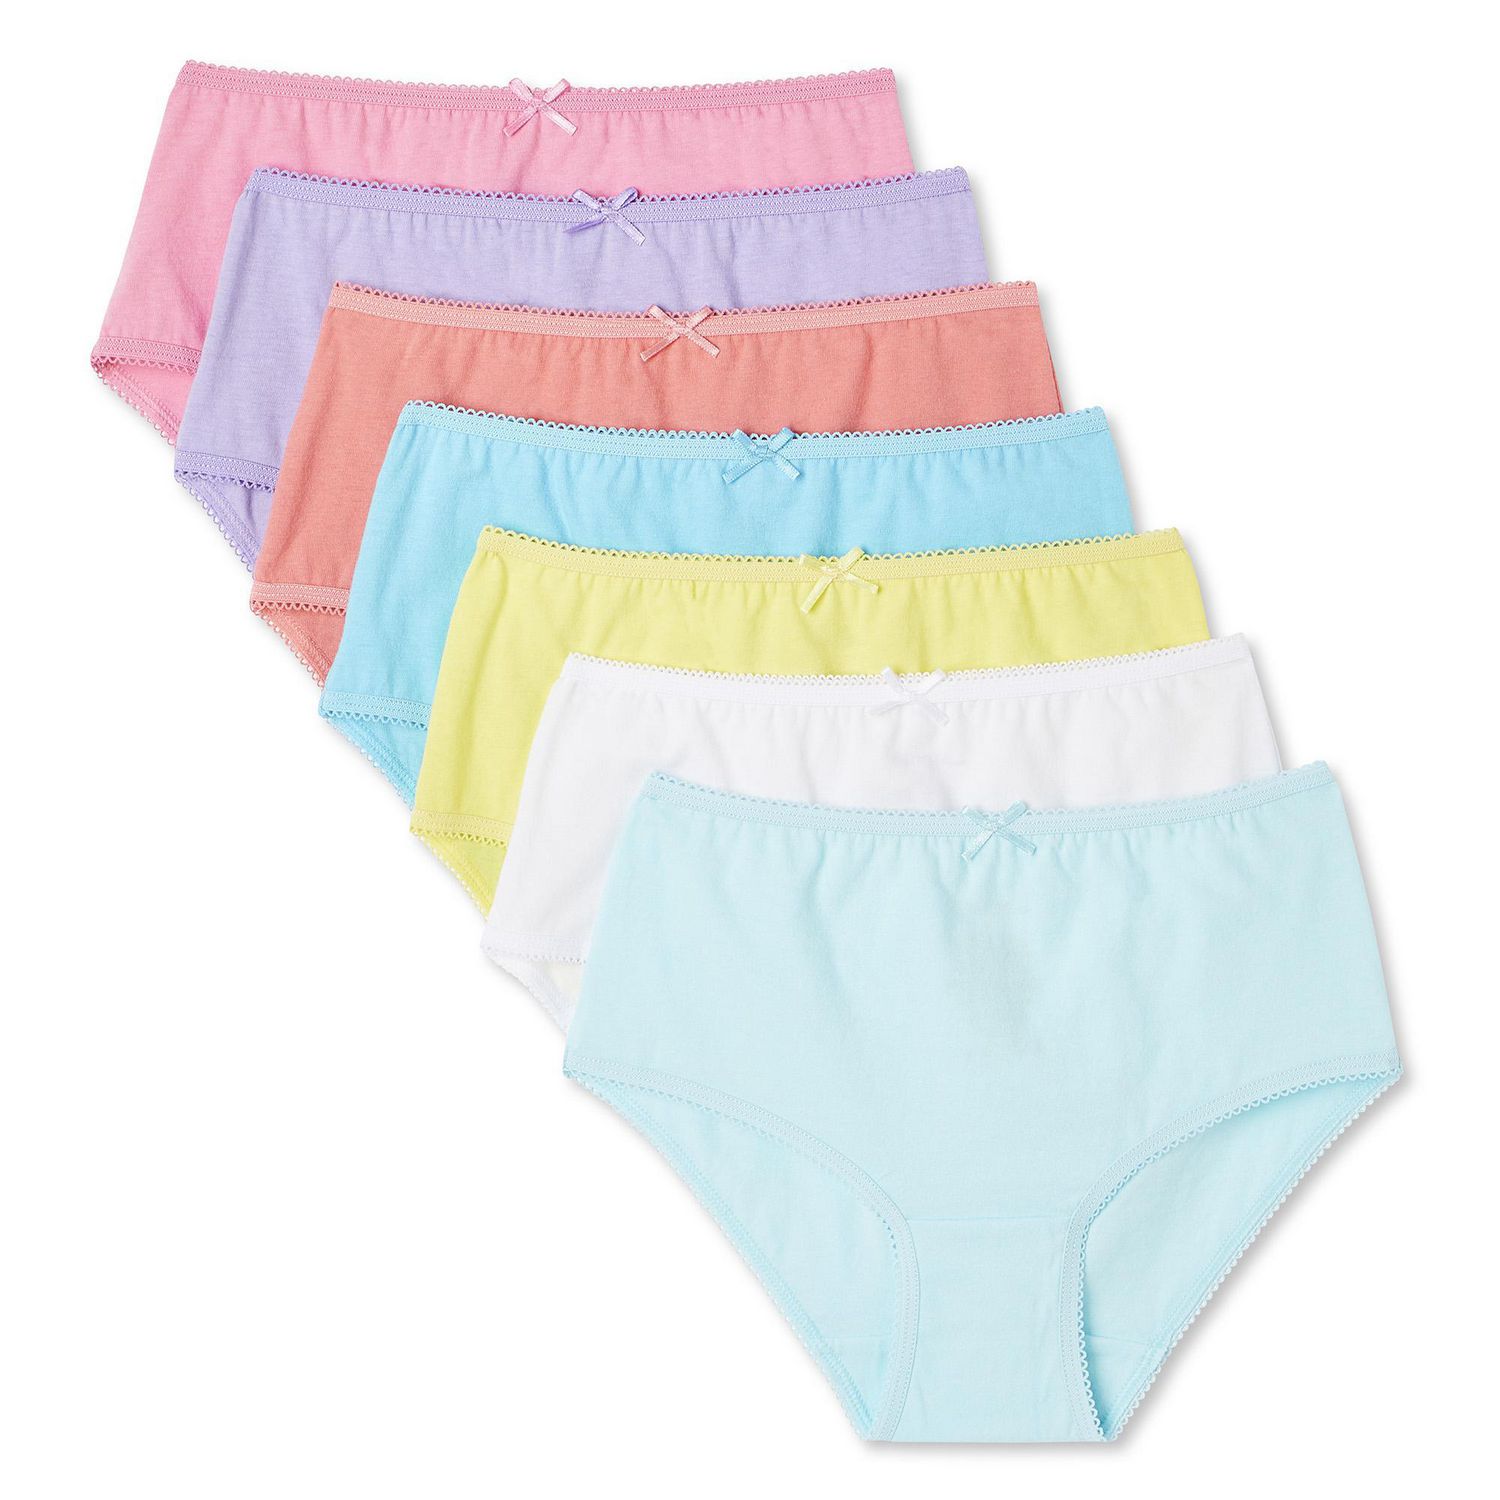 Pink 100% Cotton Girls' Underwear Size 10 for sale